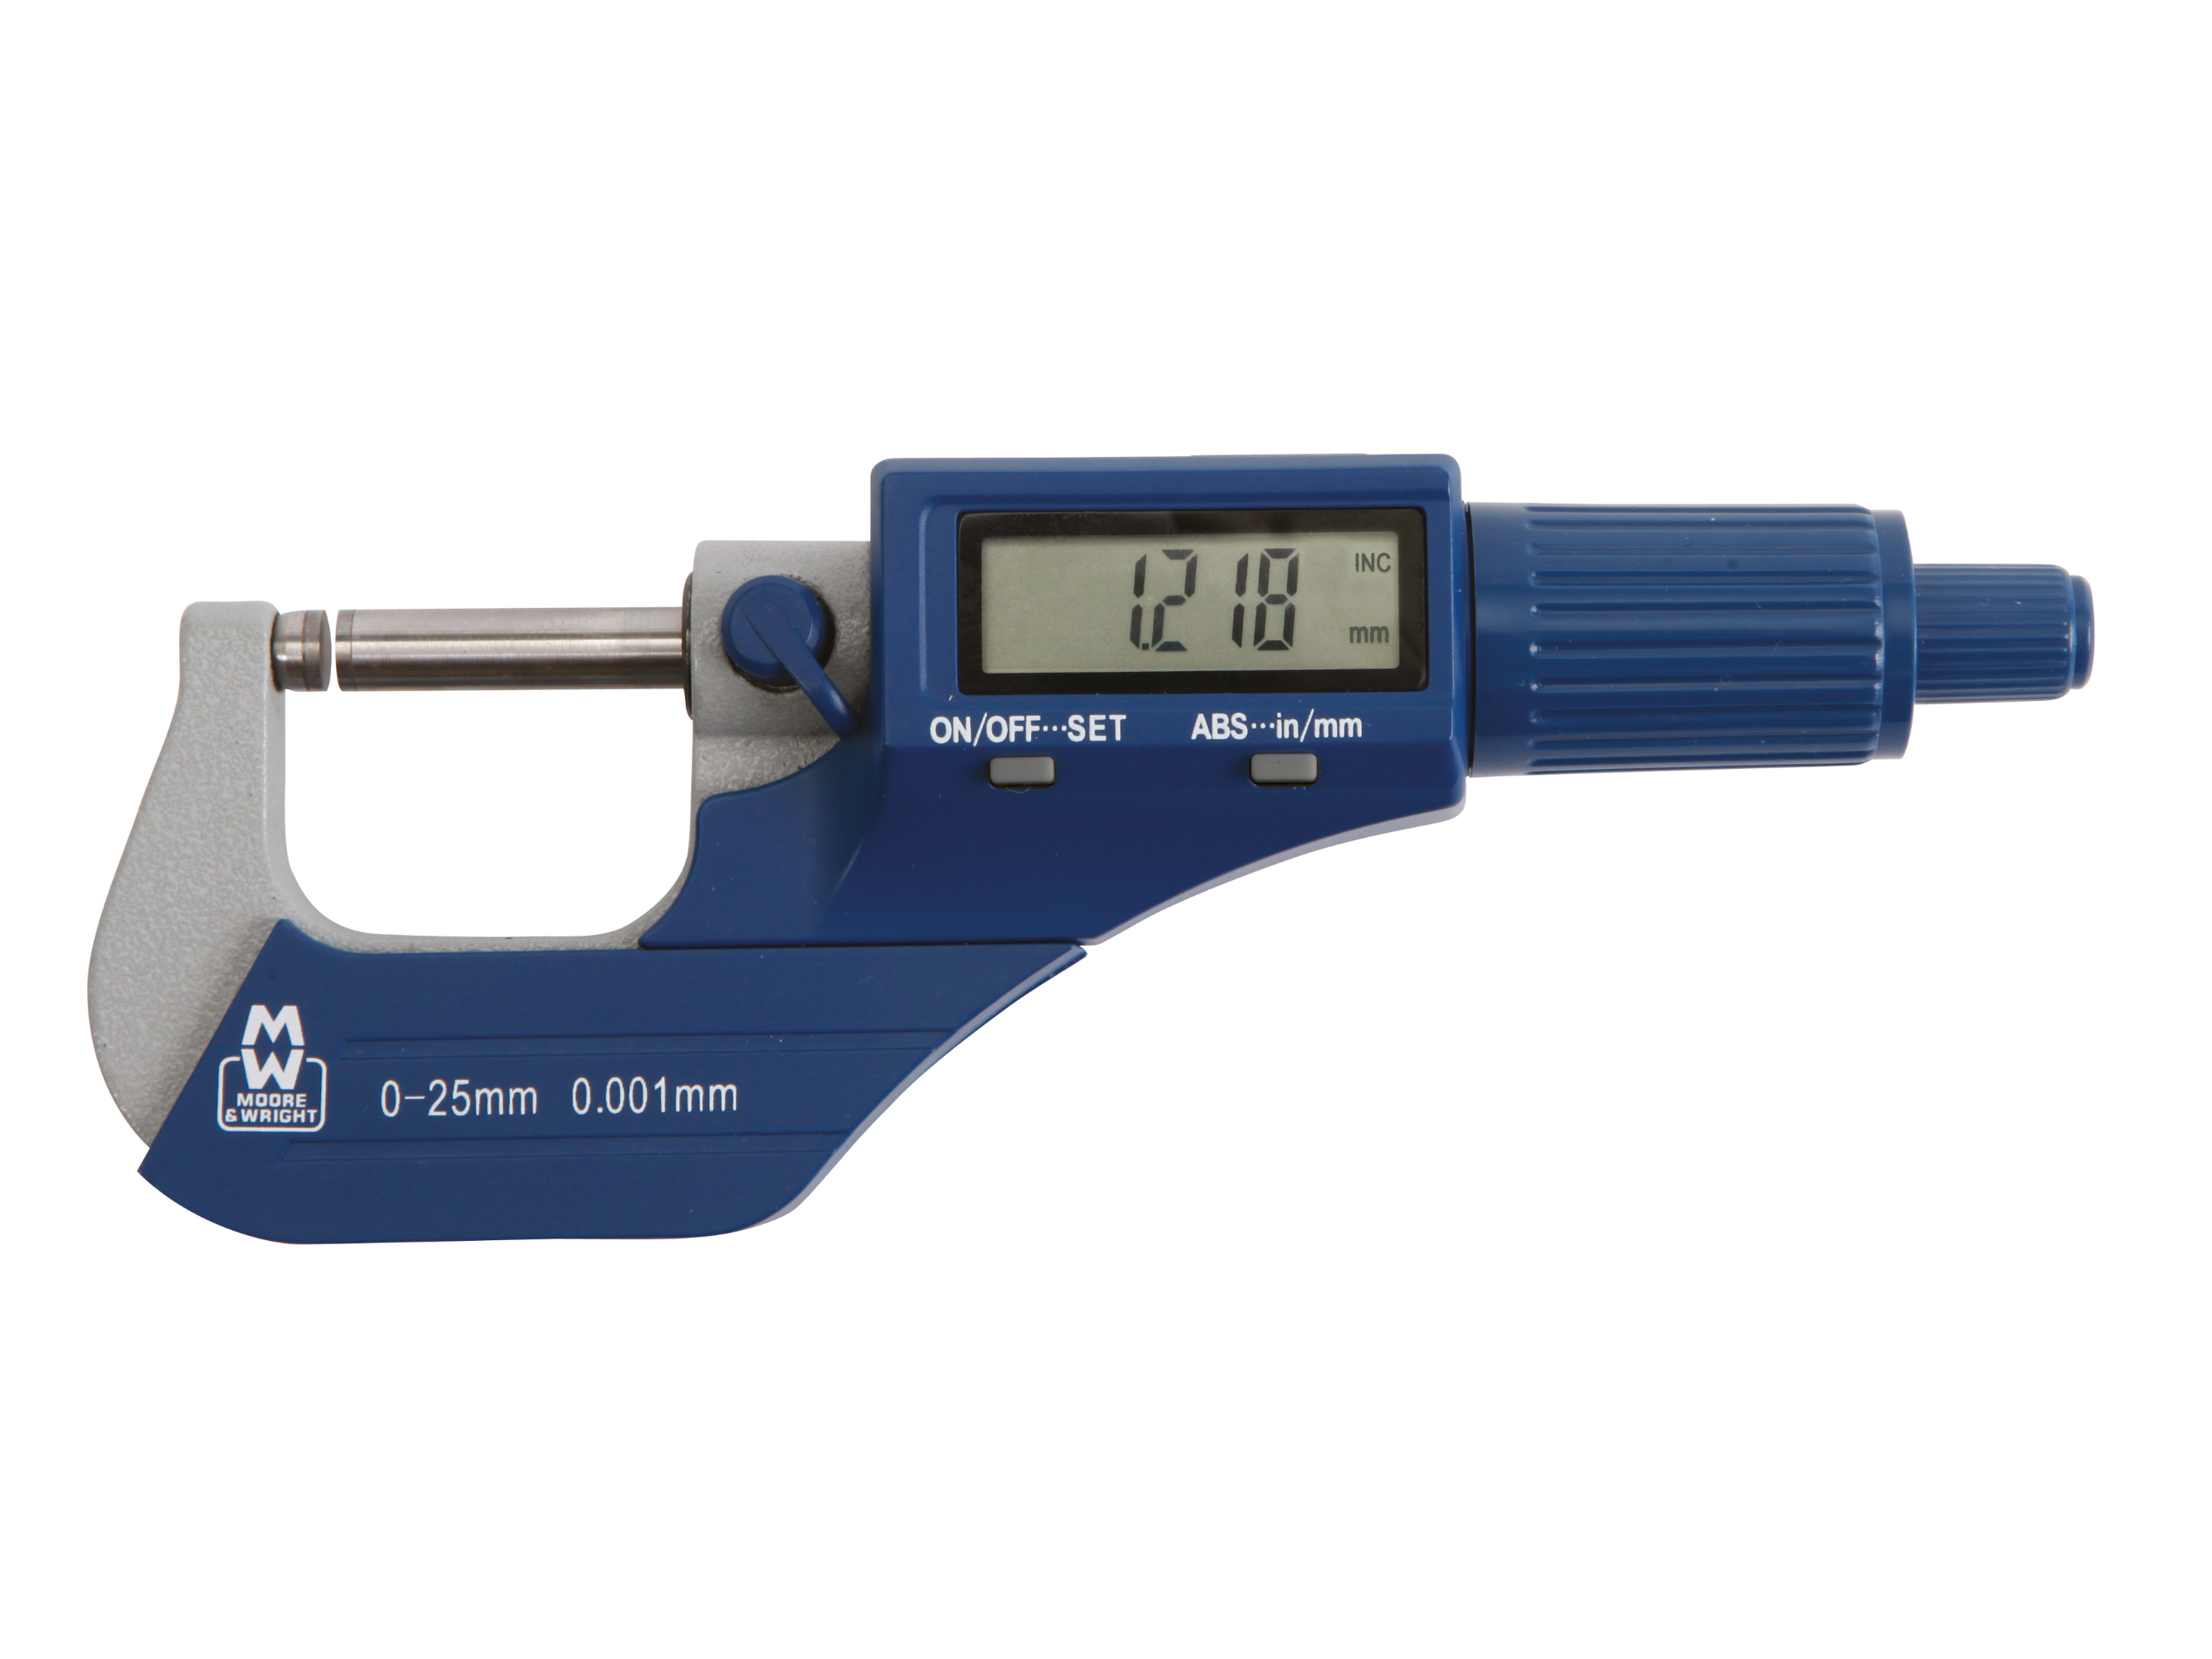 Workshop Digital Micrometer 50-75mm 0.001mm MW200-03DBL